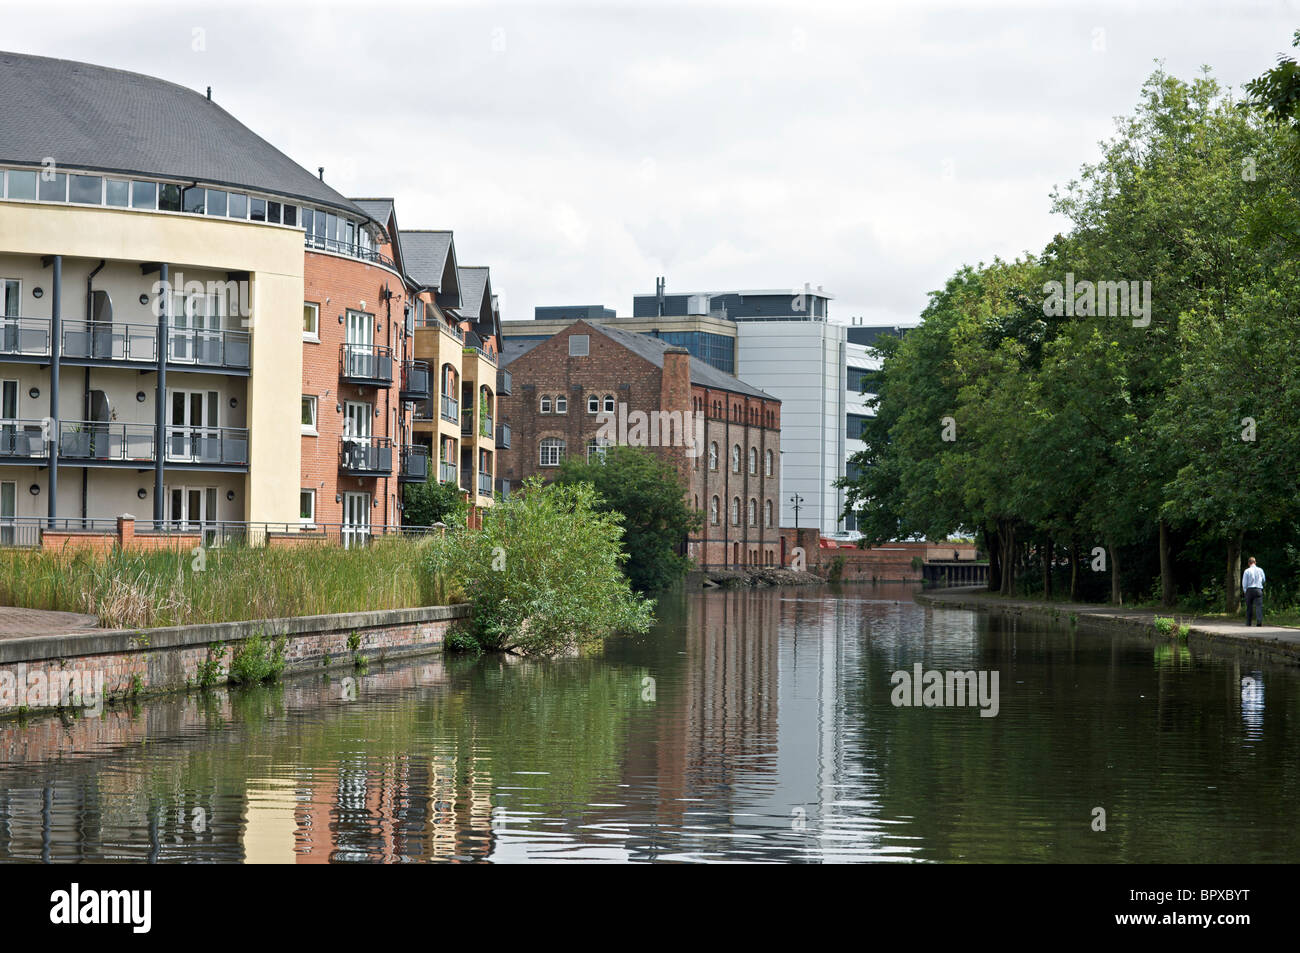 Nottingham Beeston canal, Nottingham, England, UK Stock Photo